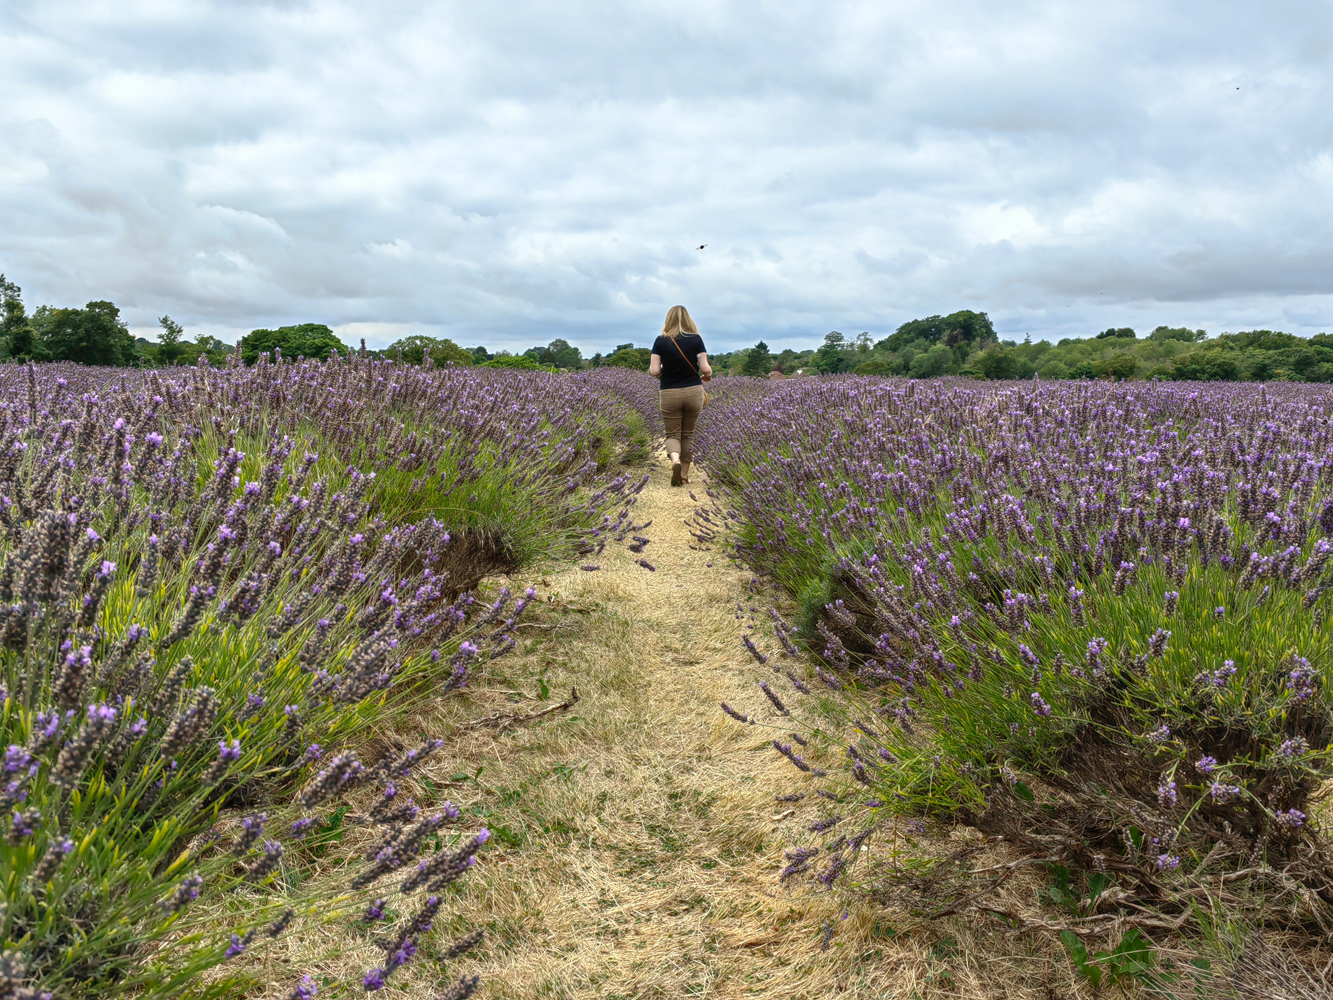 Huawei Mate Xs 2 camera samples walking through lavendar